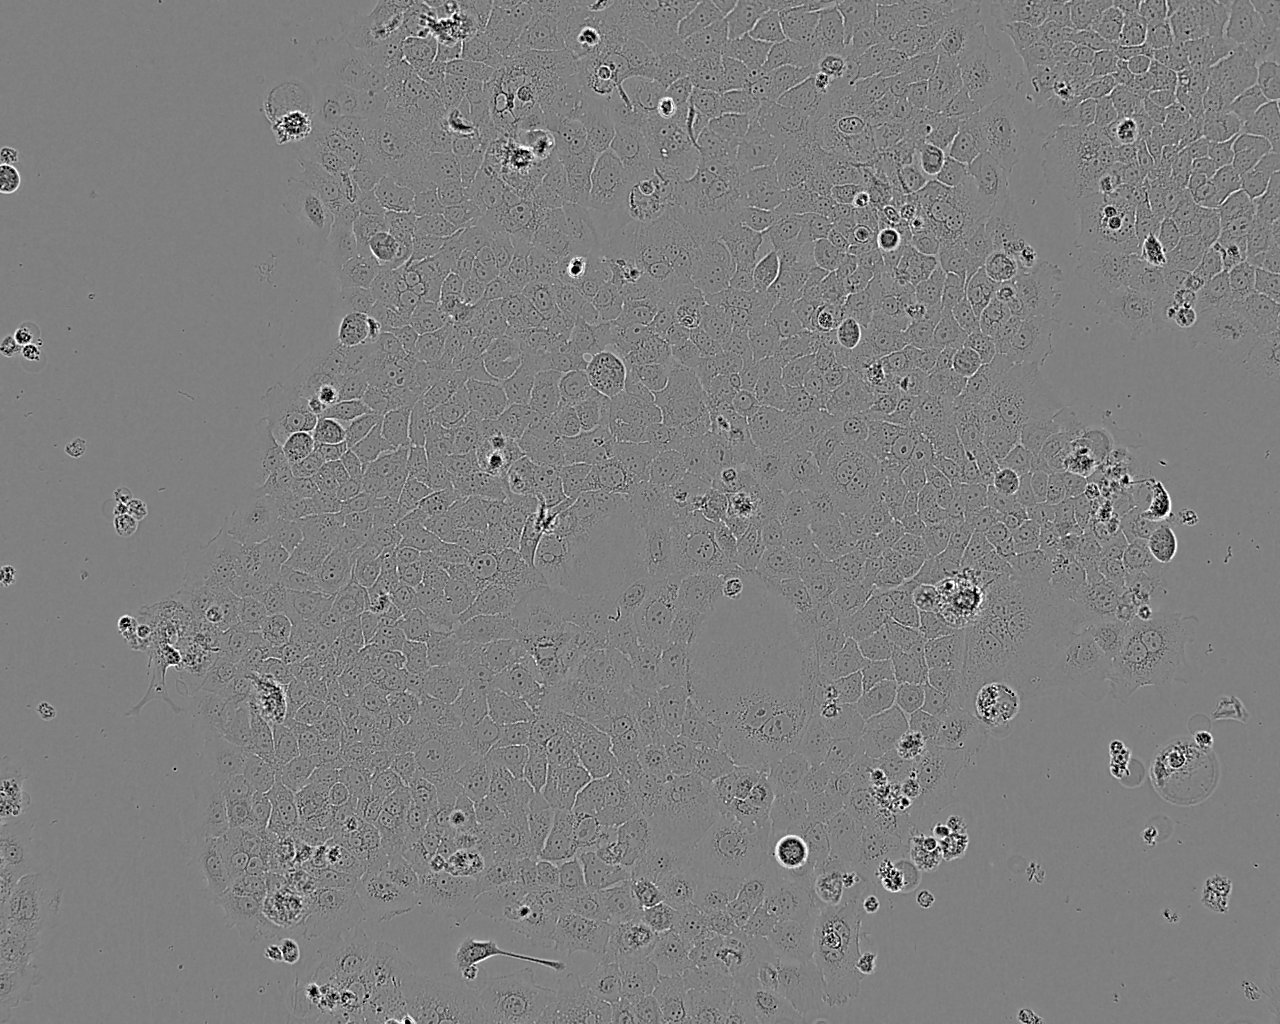 TE-11 Cell:人食管癌细胞系